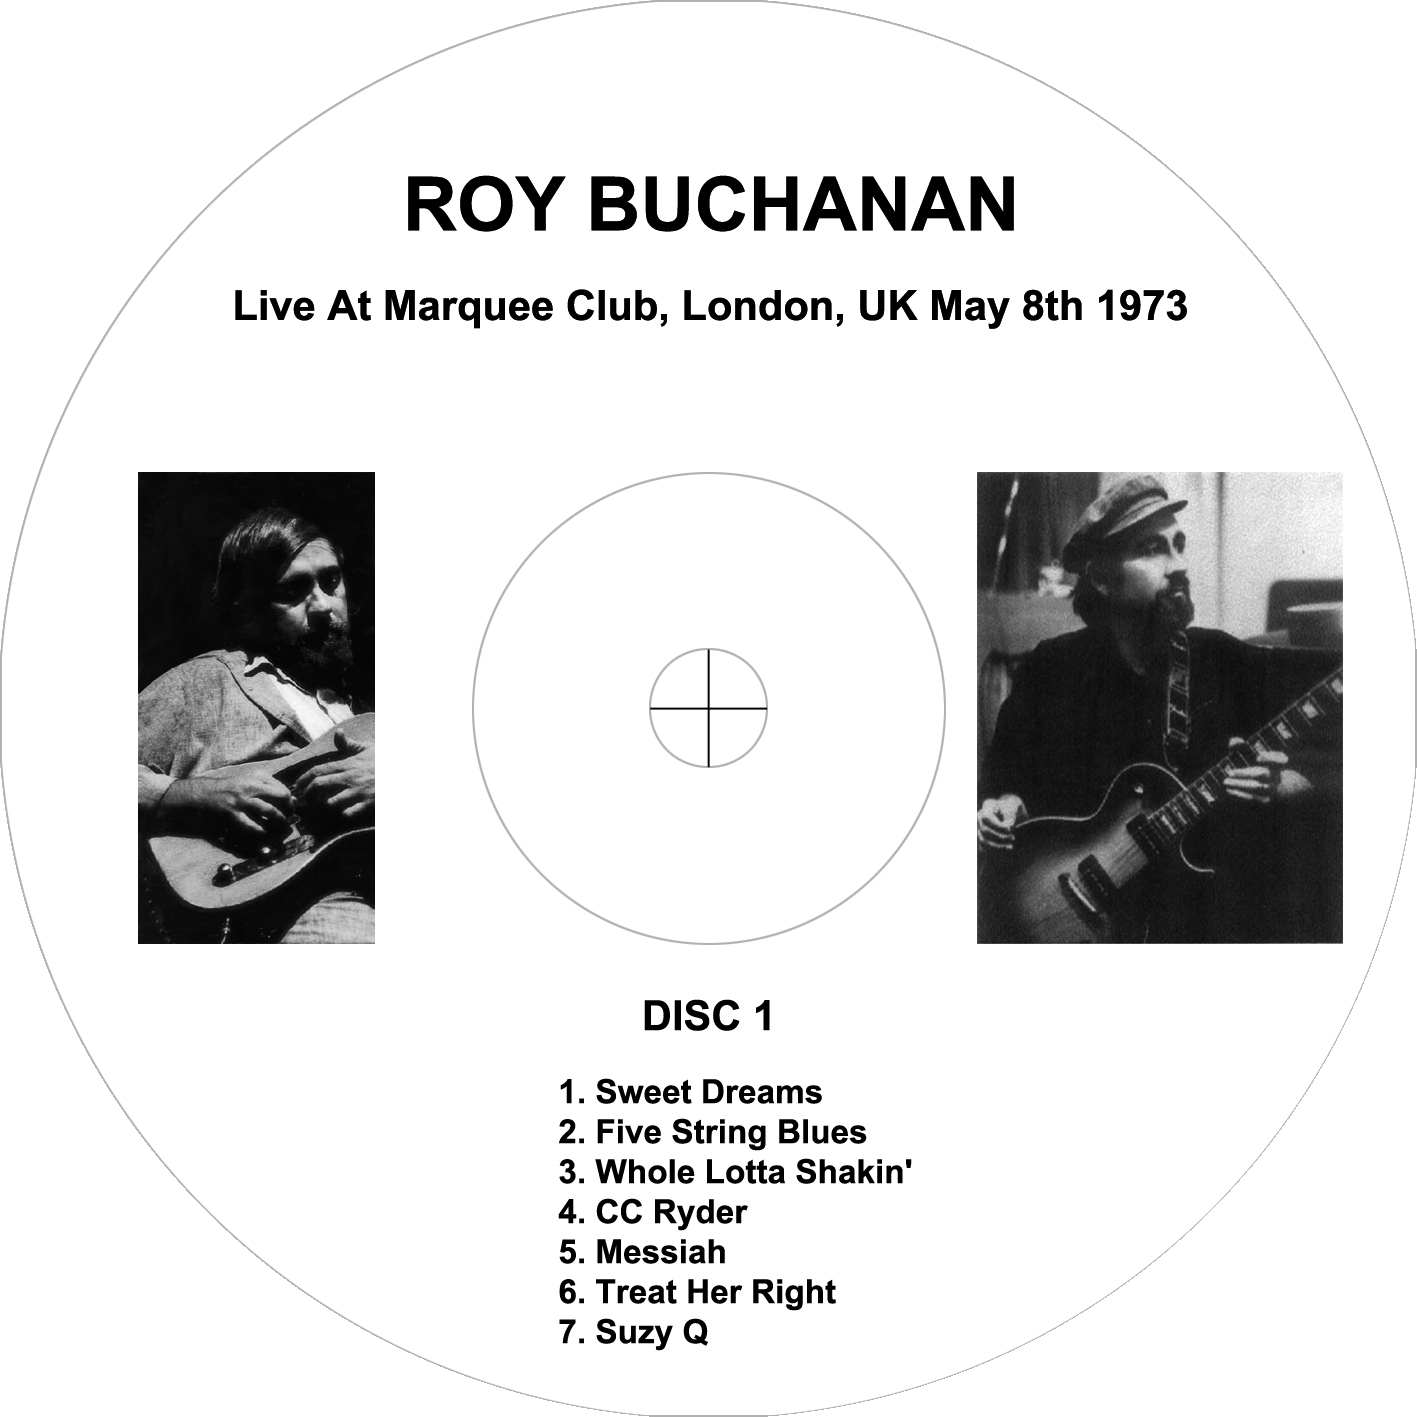 roy buchanan 1973 05 08 marquee club london enlarged label 1